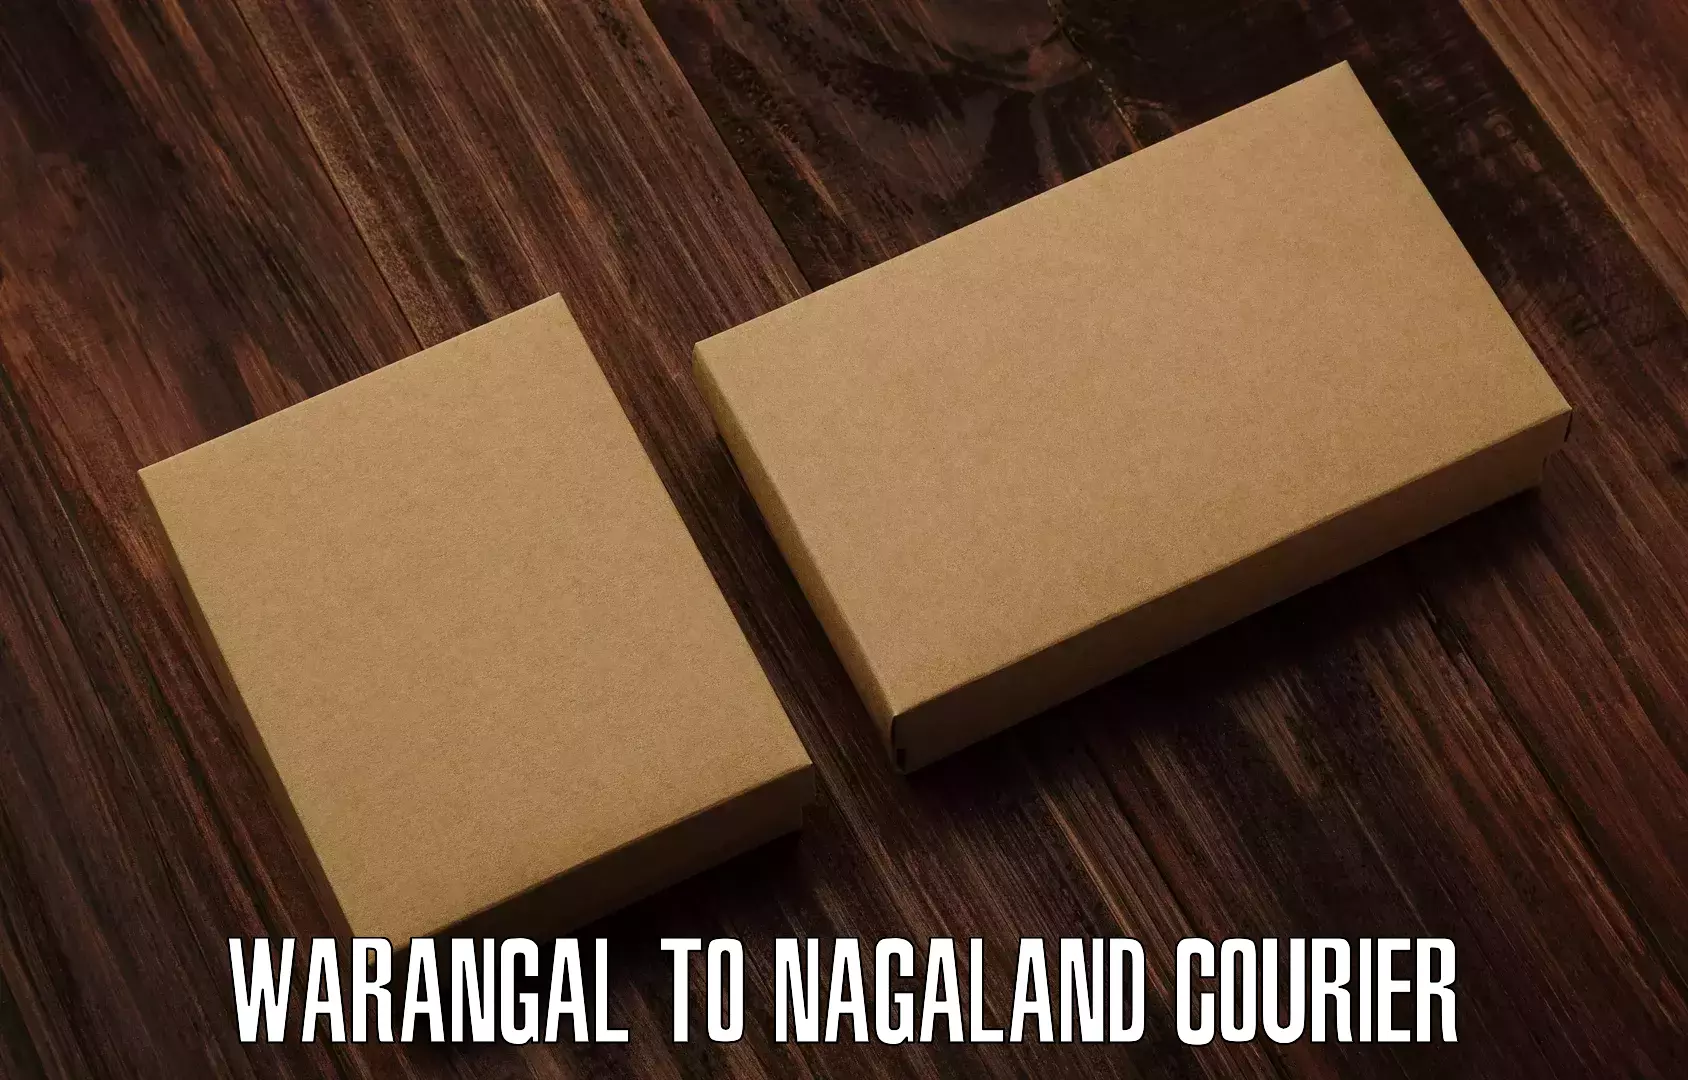 Budget-friendly shipping Warangal to Nagaland